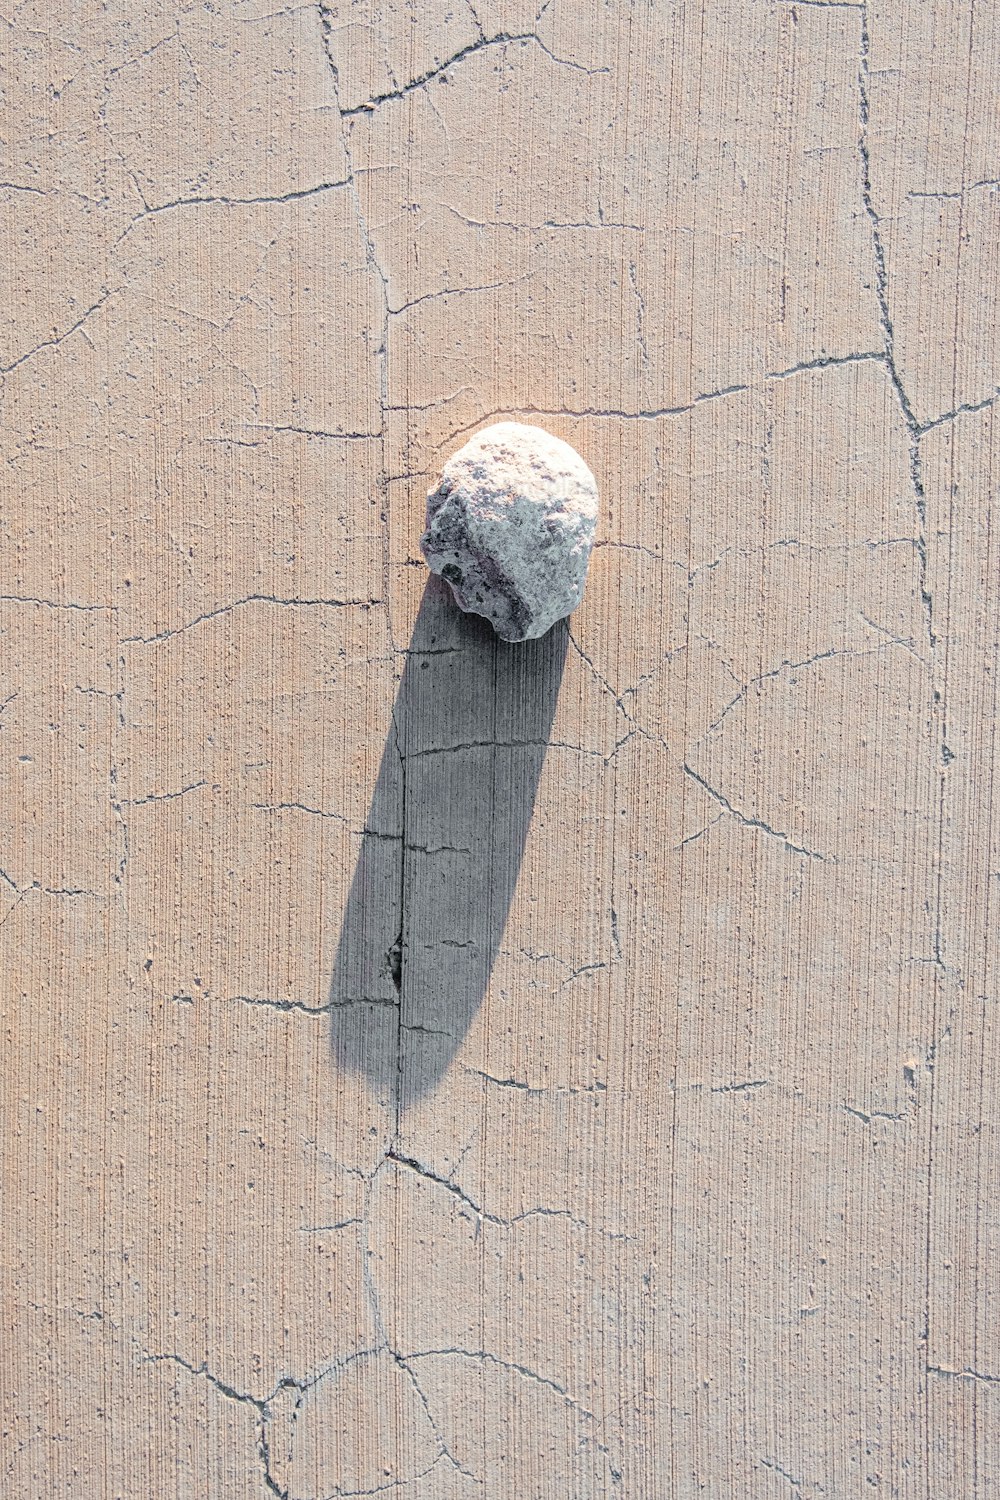 una roccia seduta sopra una lastra di cemento